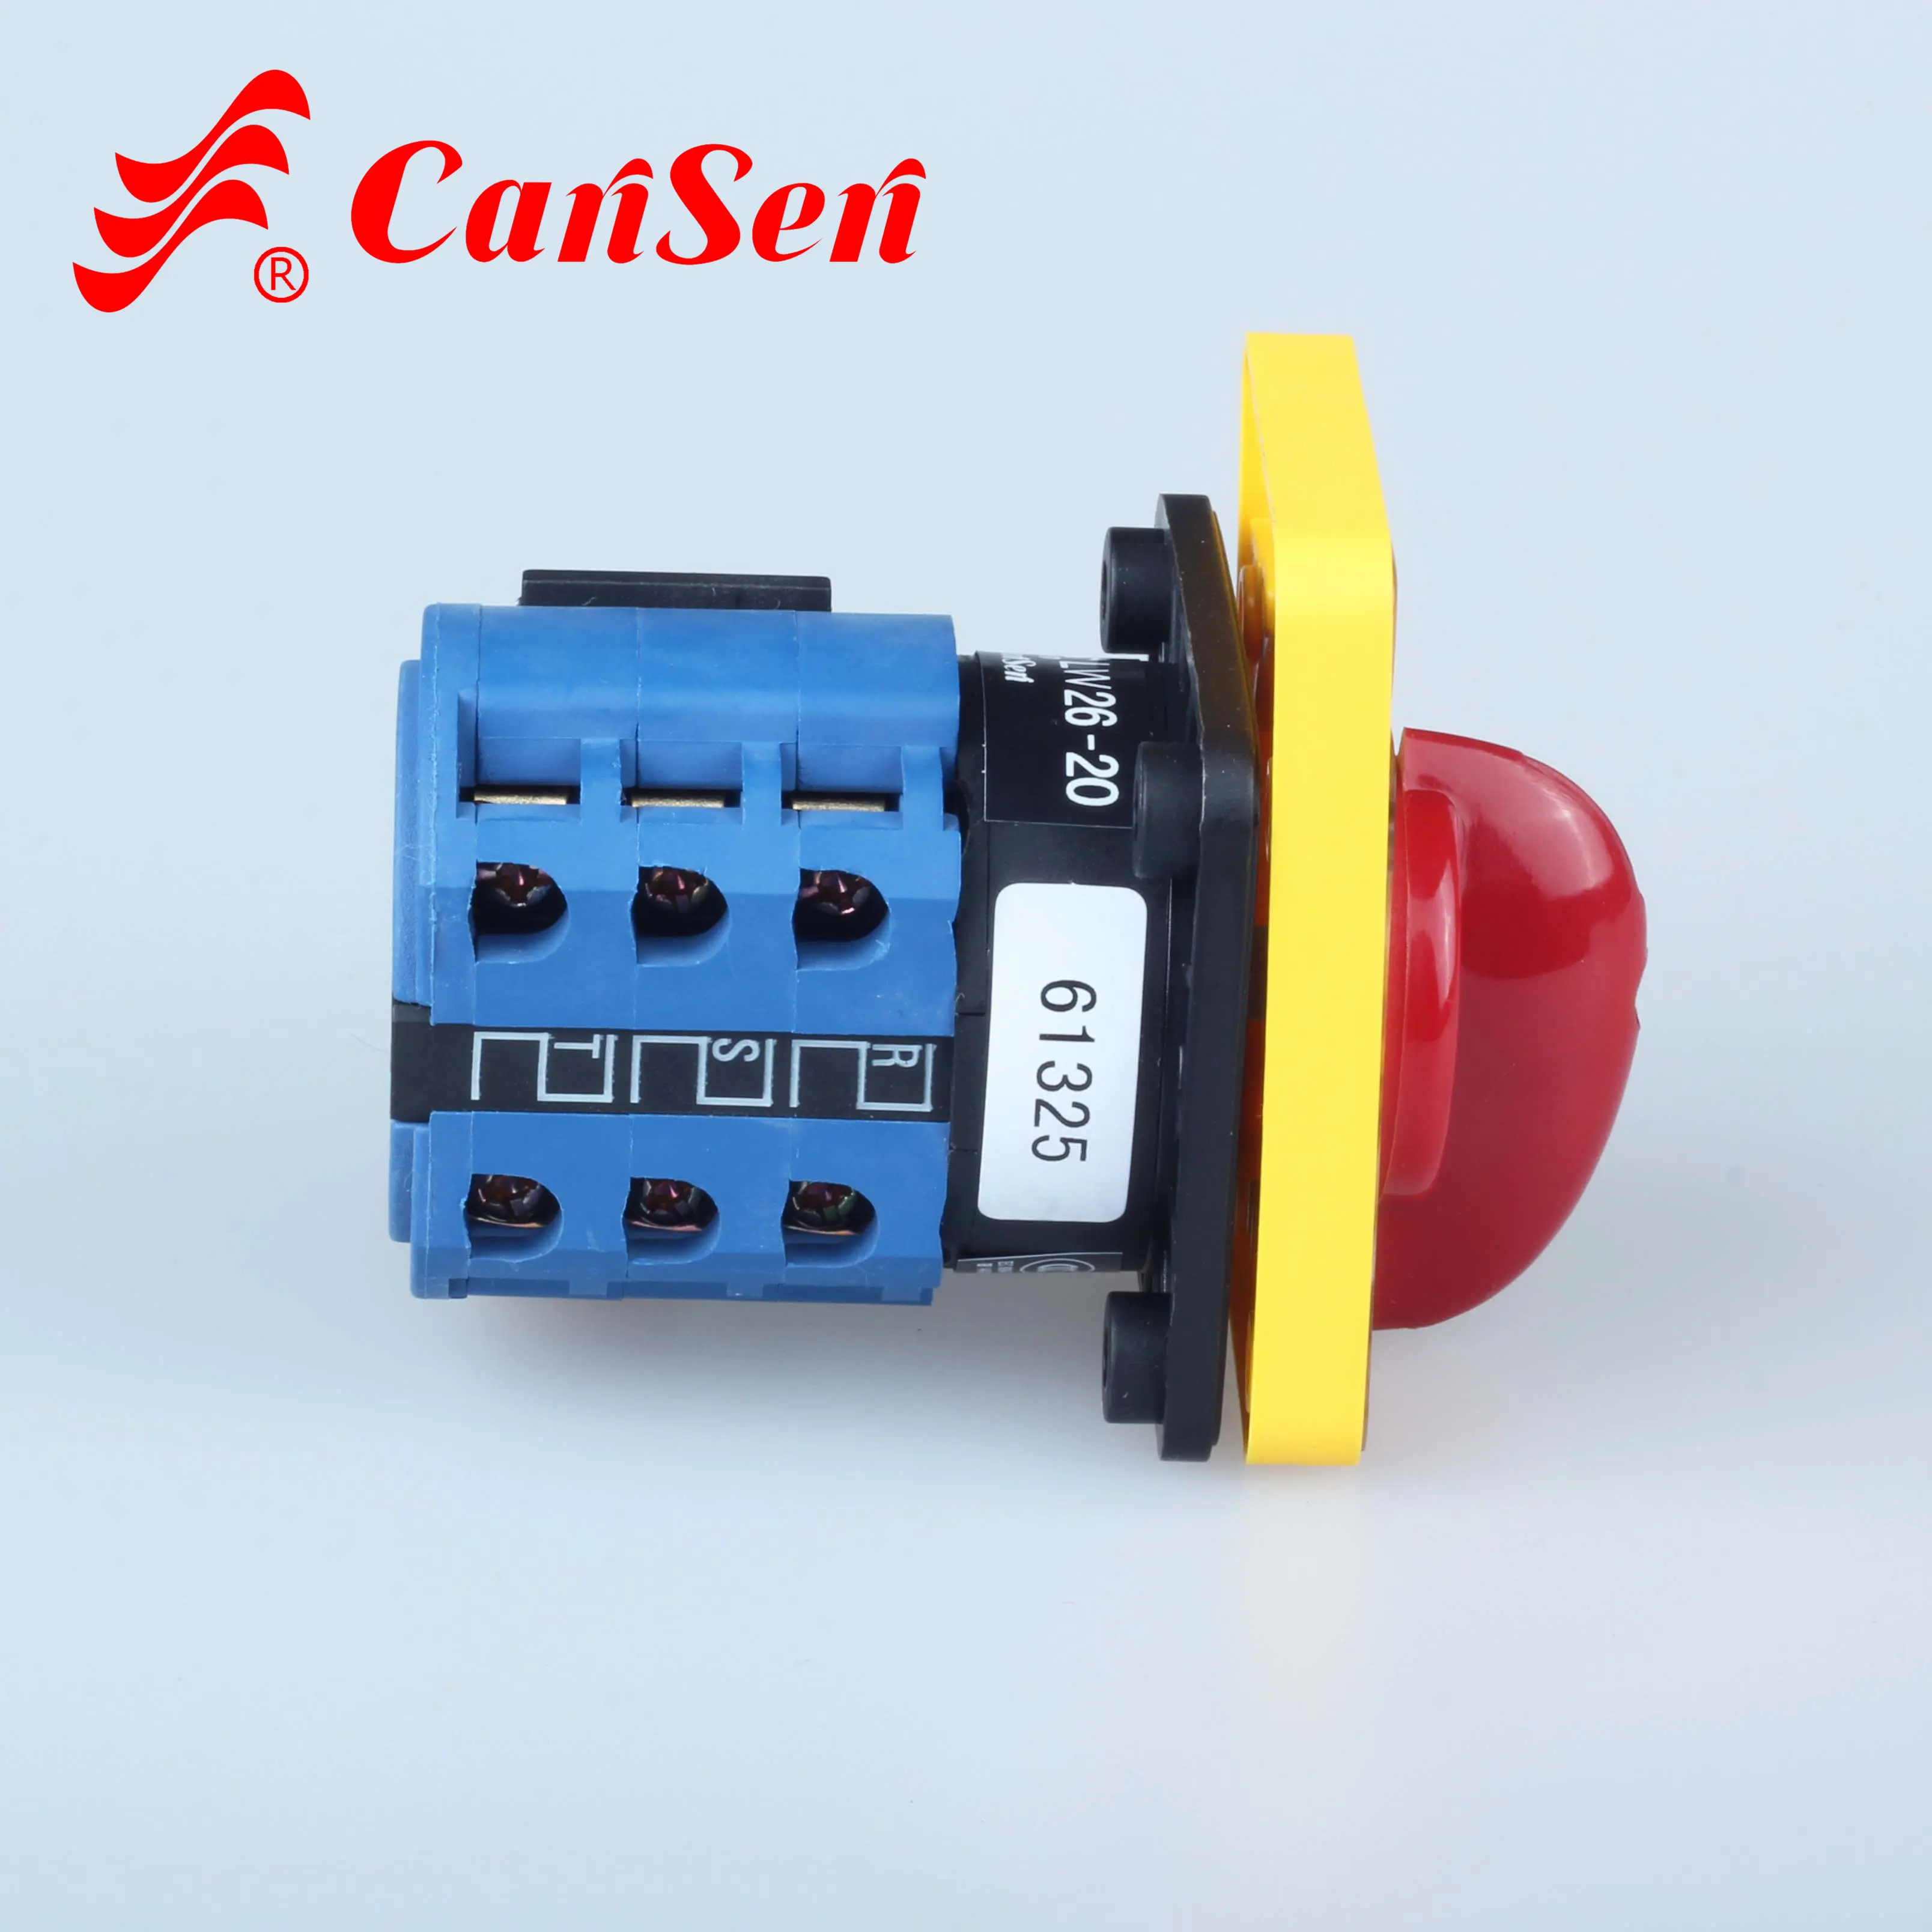 Cansen LW26-20 전류계 YR 최고 판매 보장 품질 볼륨 제어 스위치